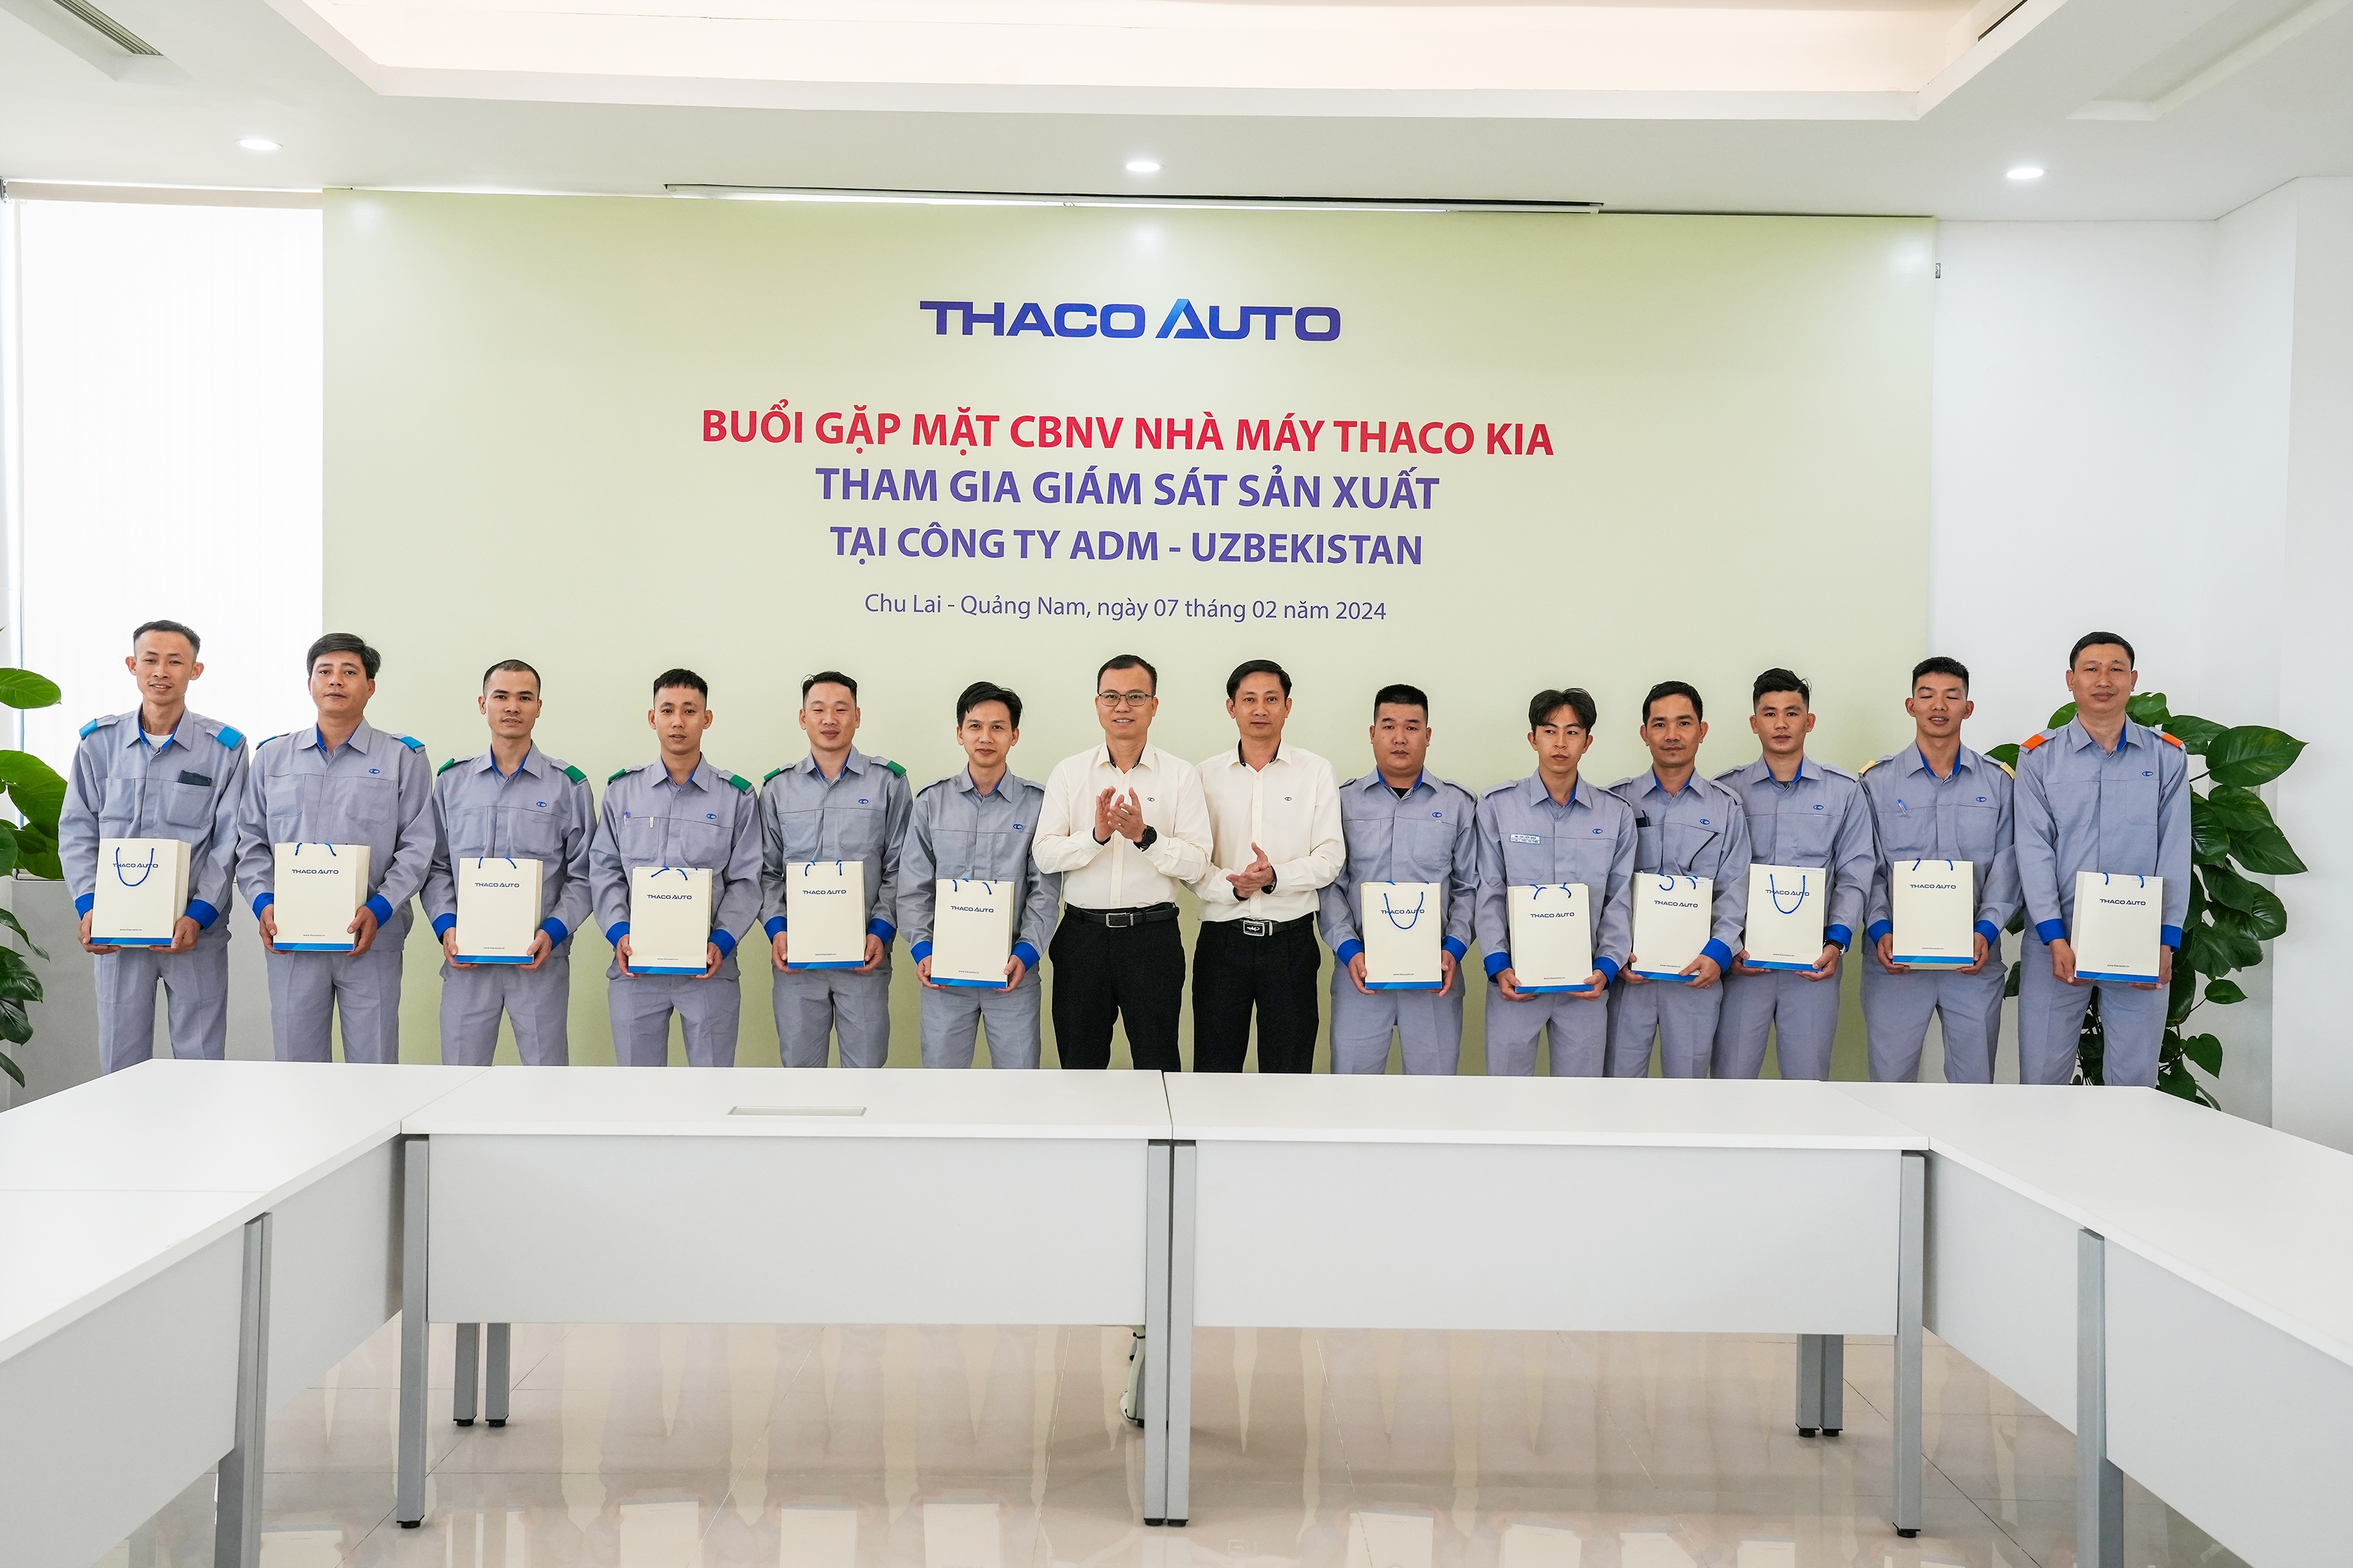 Nhà máy Thaco Kia tham gia giám sát sản xuất Kia Sonet tại Uzbekistan - ảnh 1